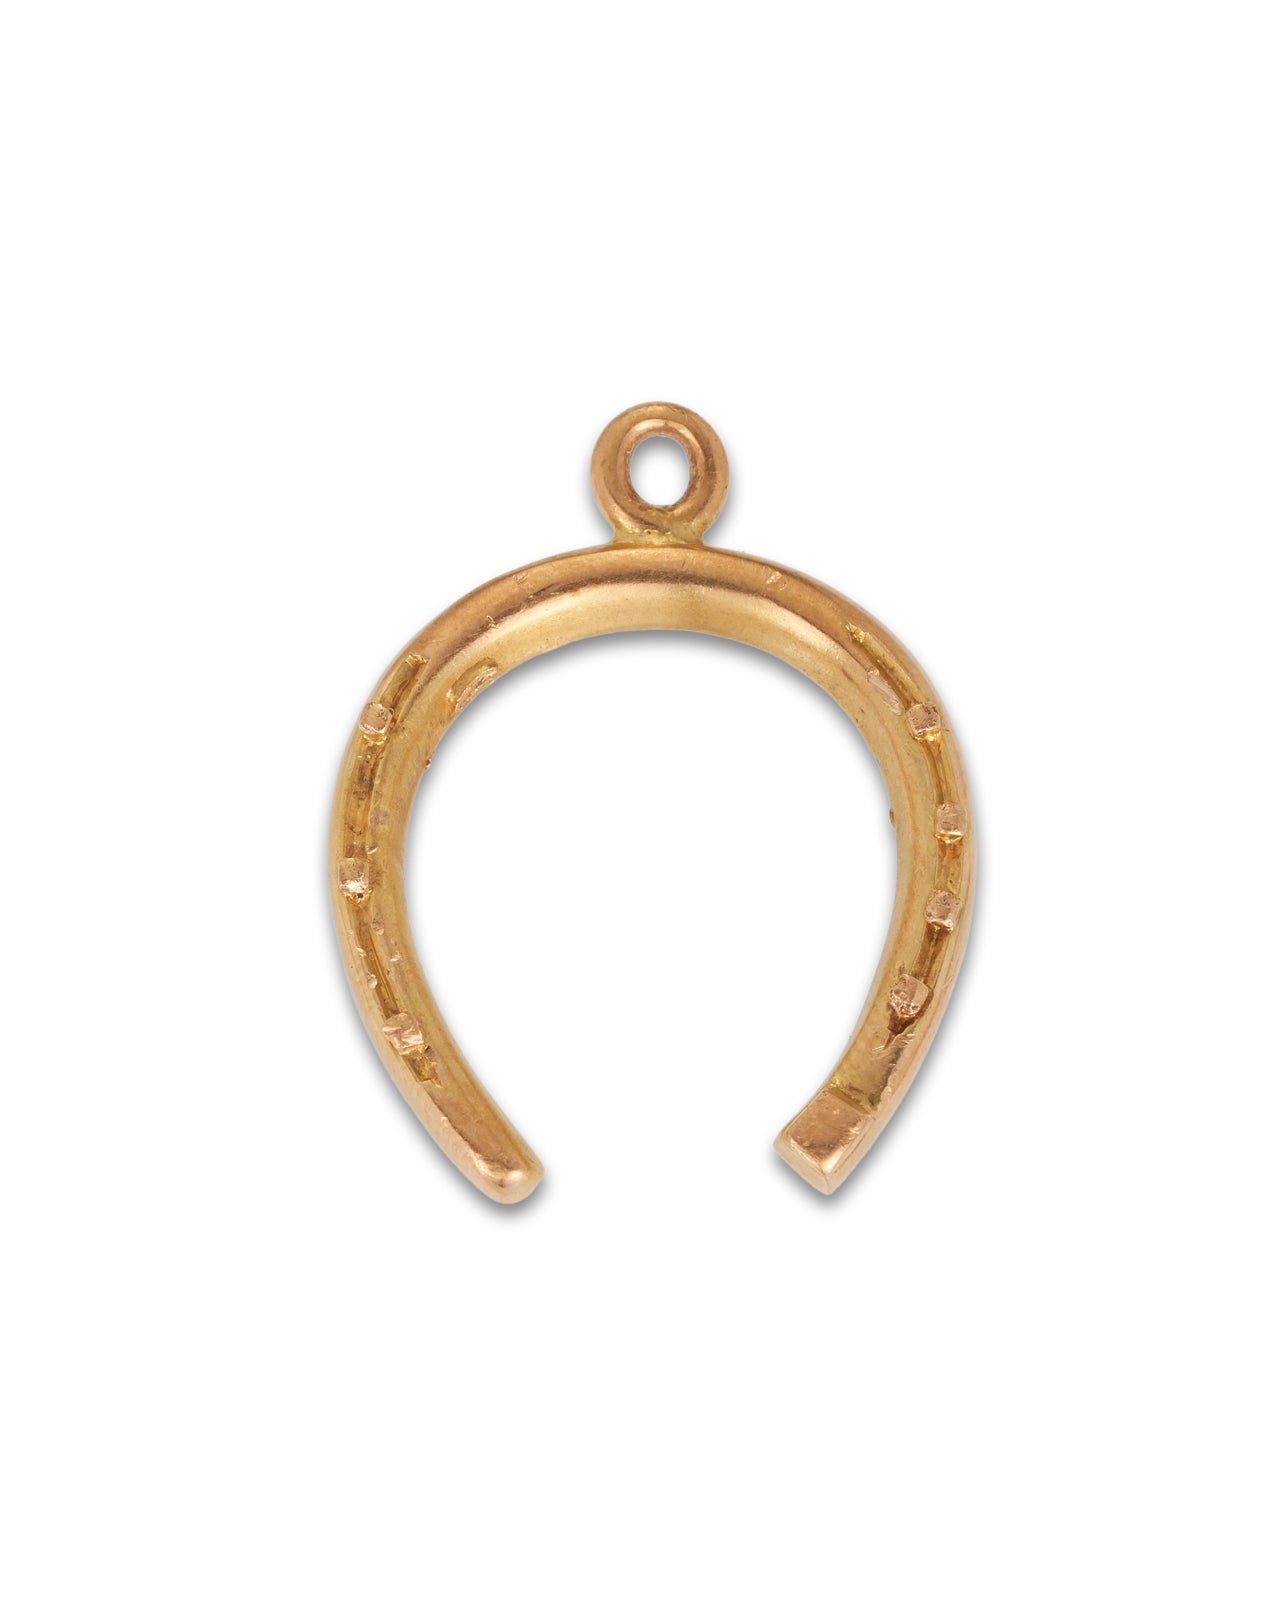 Antique Gold Horseshoe Charm 